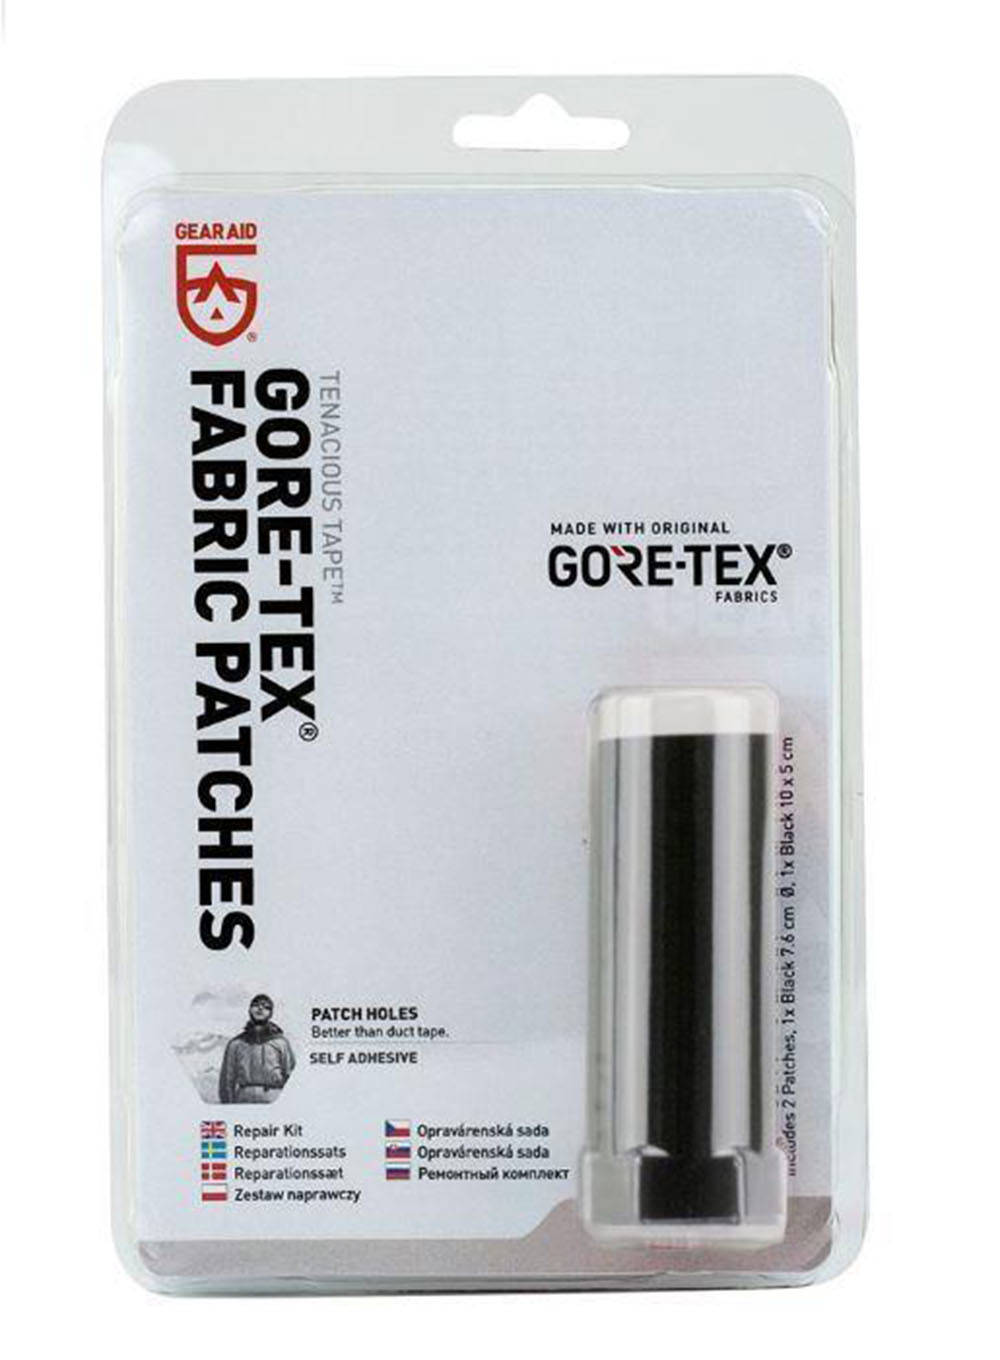 Łatki naprawcze GEARAID pol_pl_Latki do napraw Gear Aid Tenacious Tape GORE TEX Fabric Patches 68317_1 miniaturka